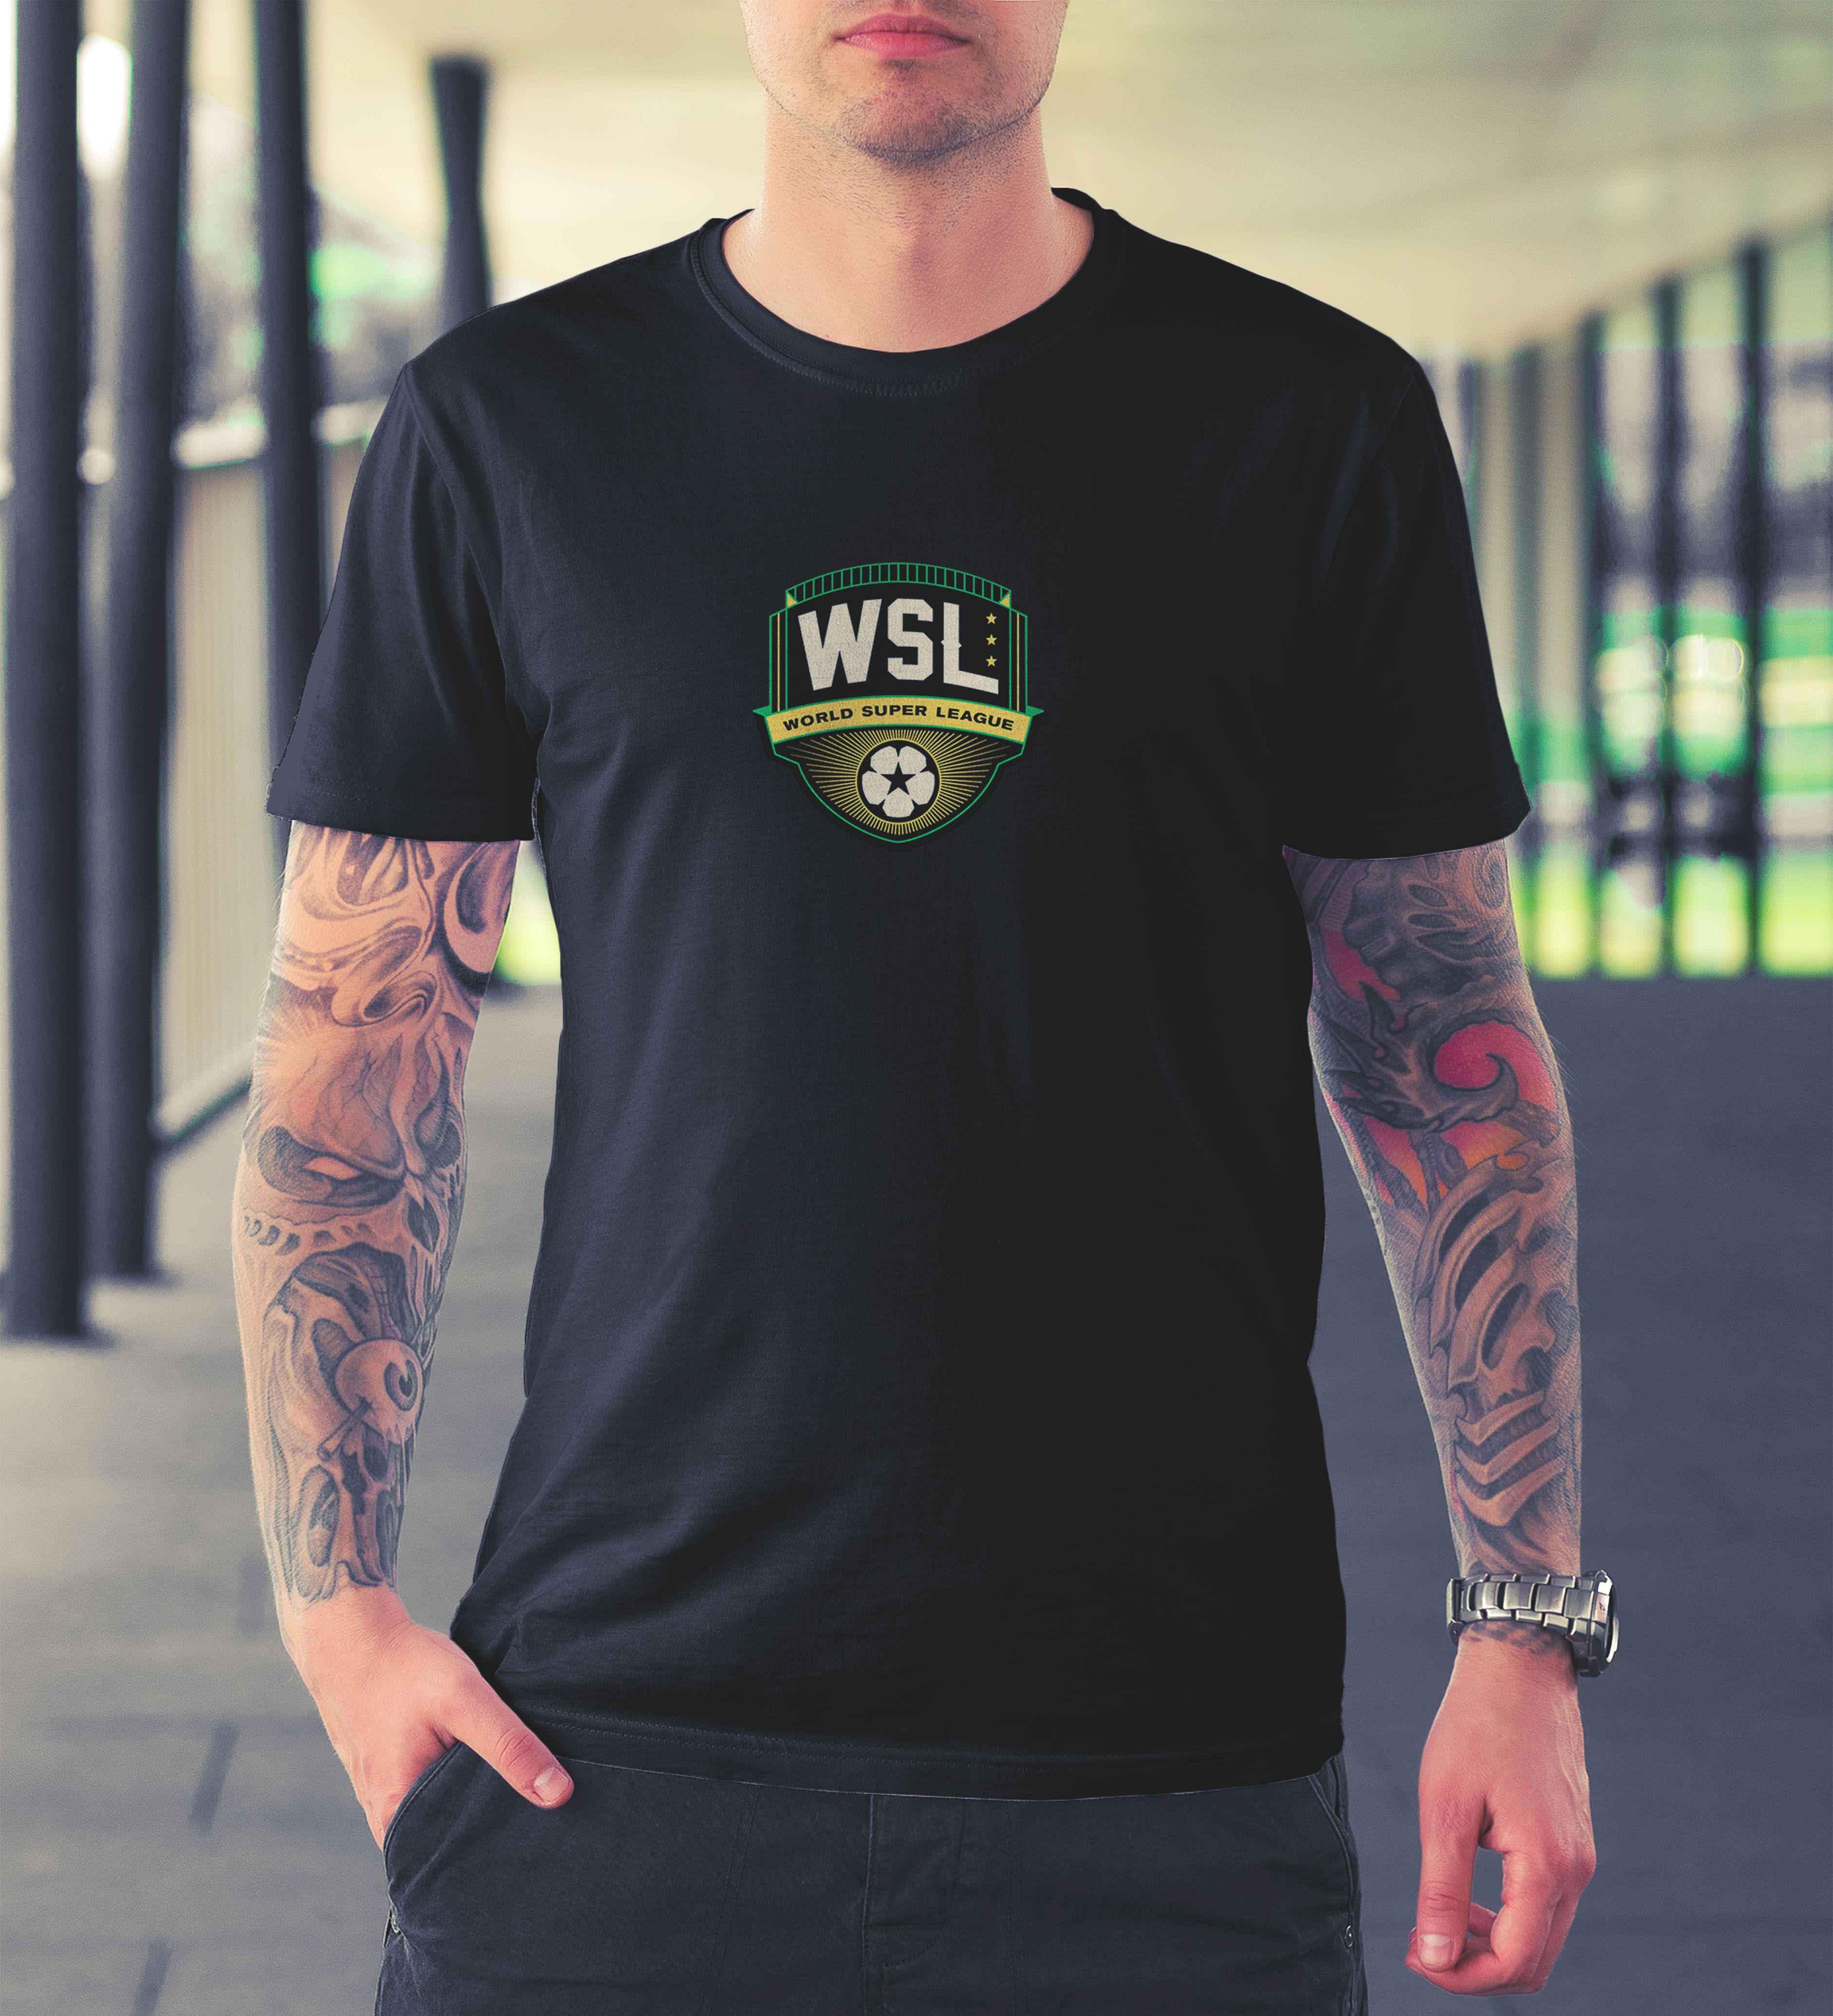 World Super League T-shirt